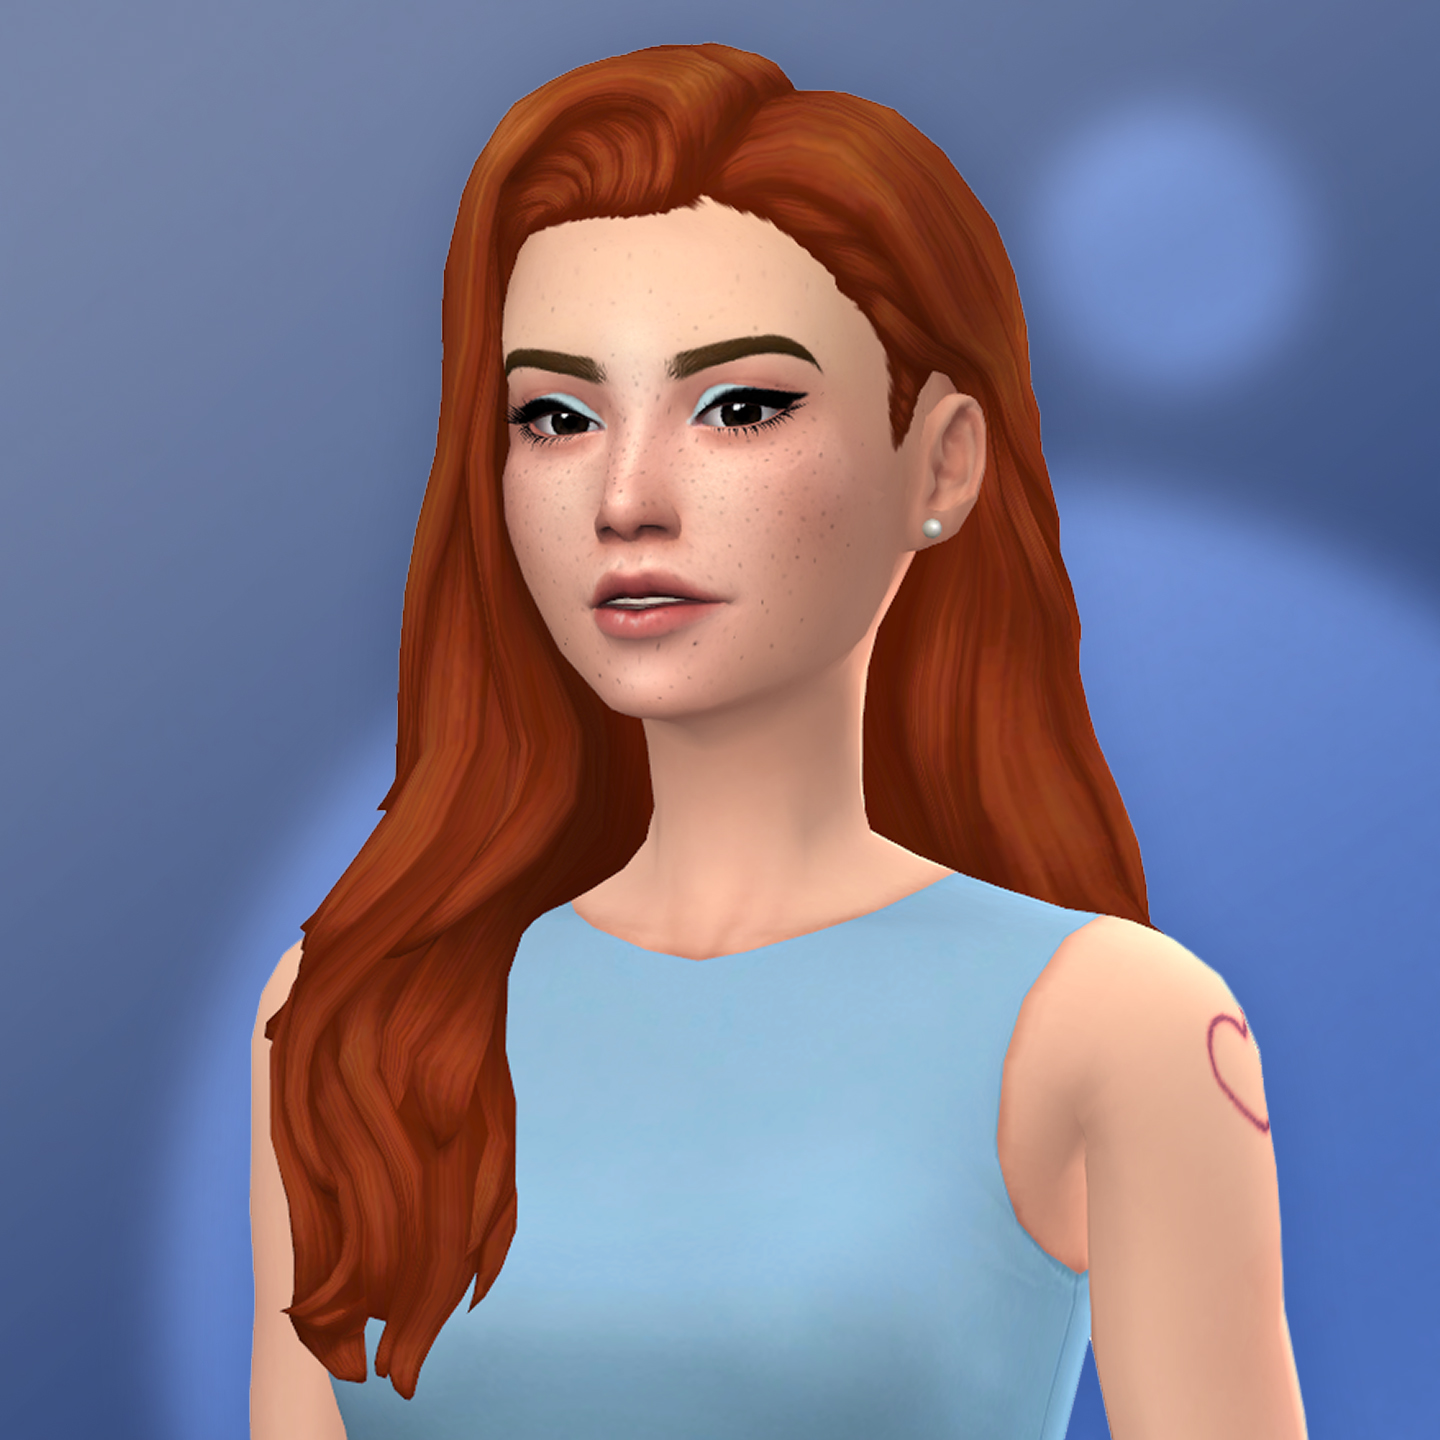 QICC - Cleo Hair - The Sims 4 Create a Sim - CurseForge